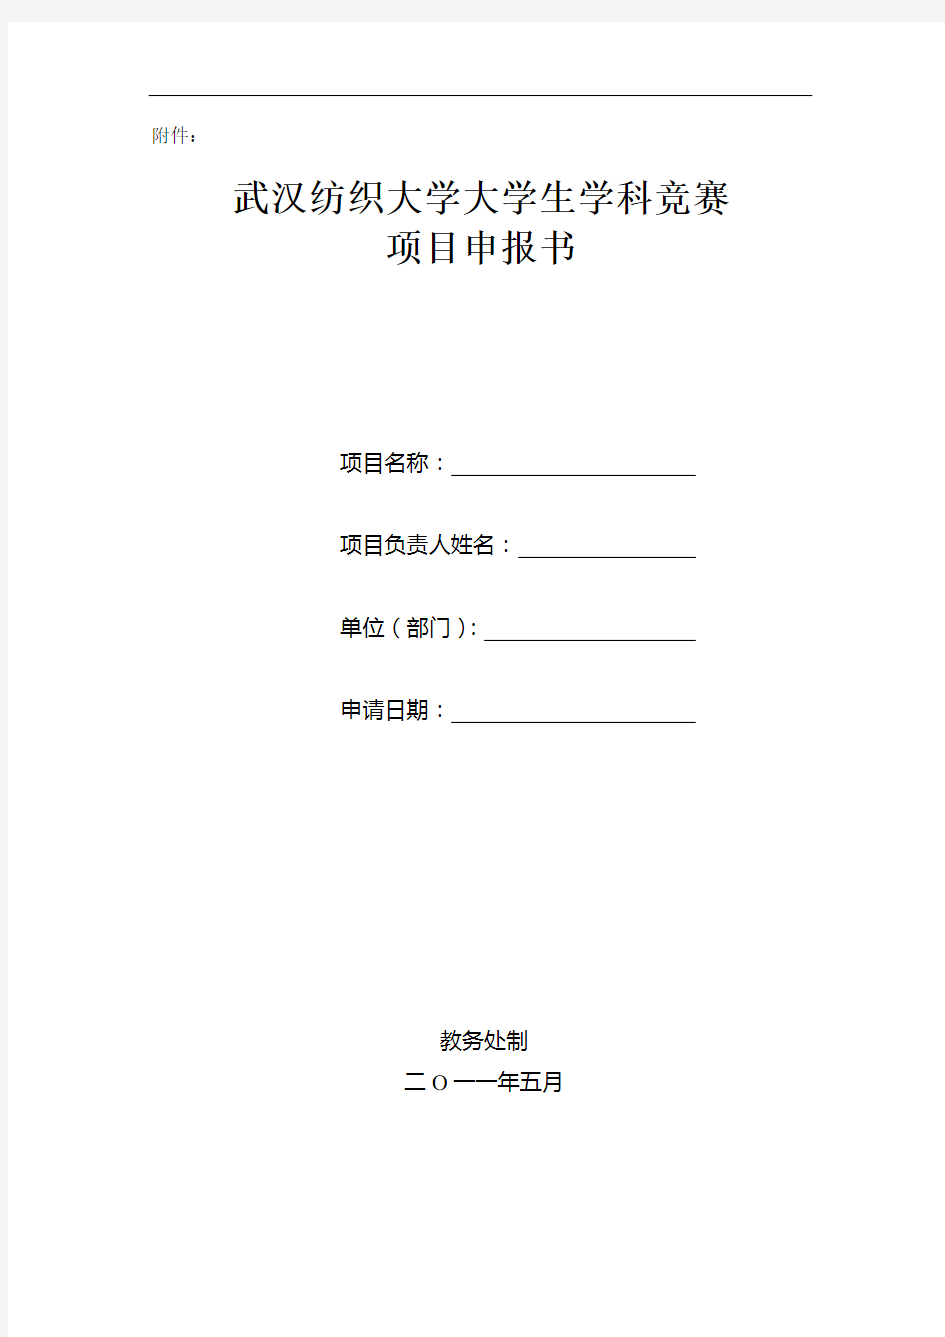 武汉纺织大学大学生学科竞赛项目申报书